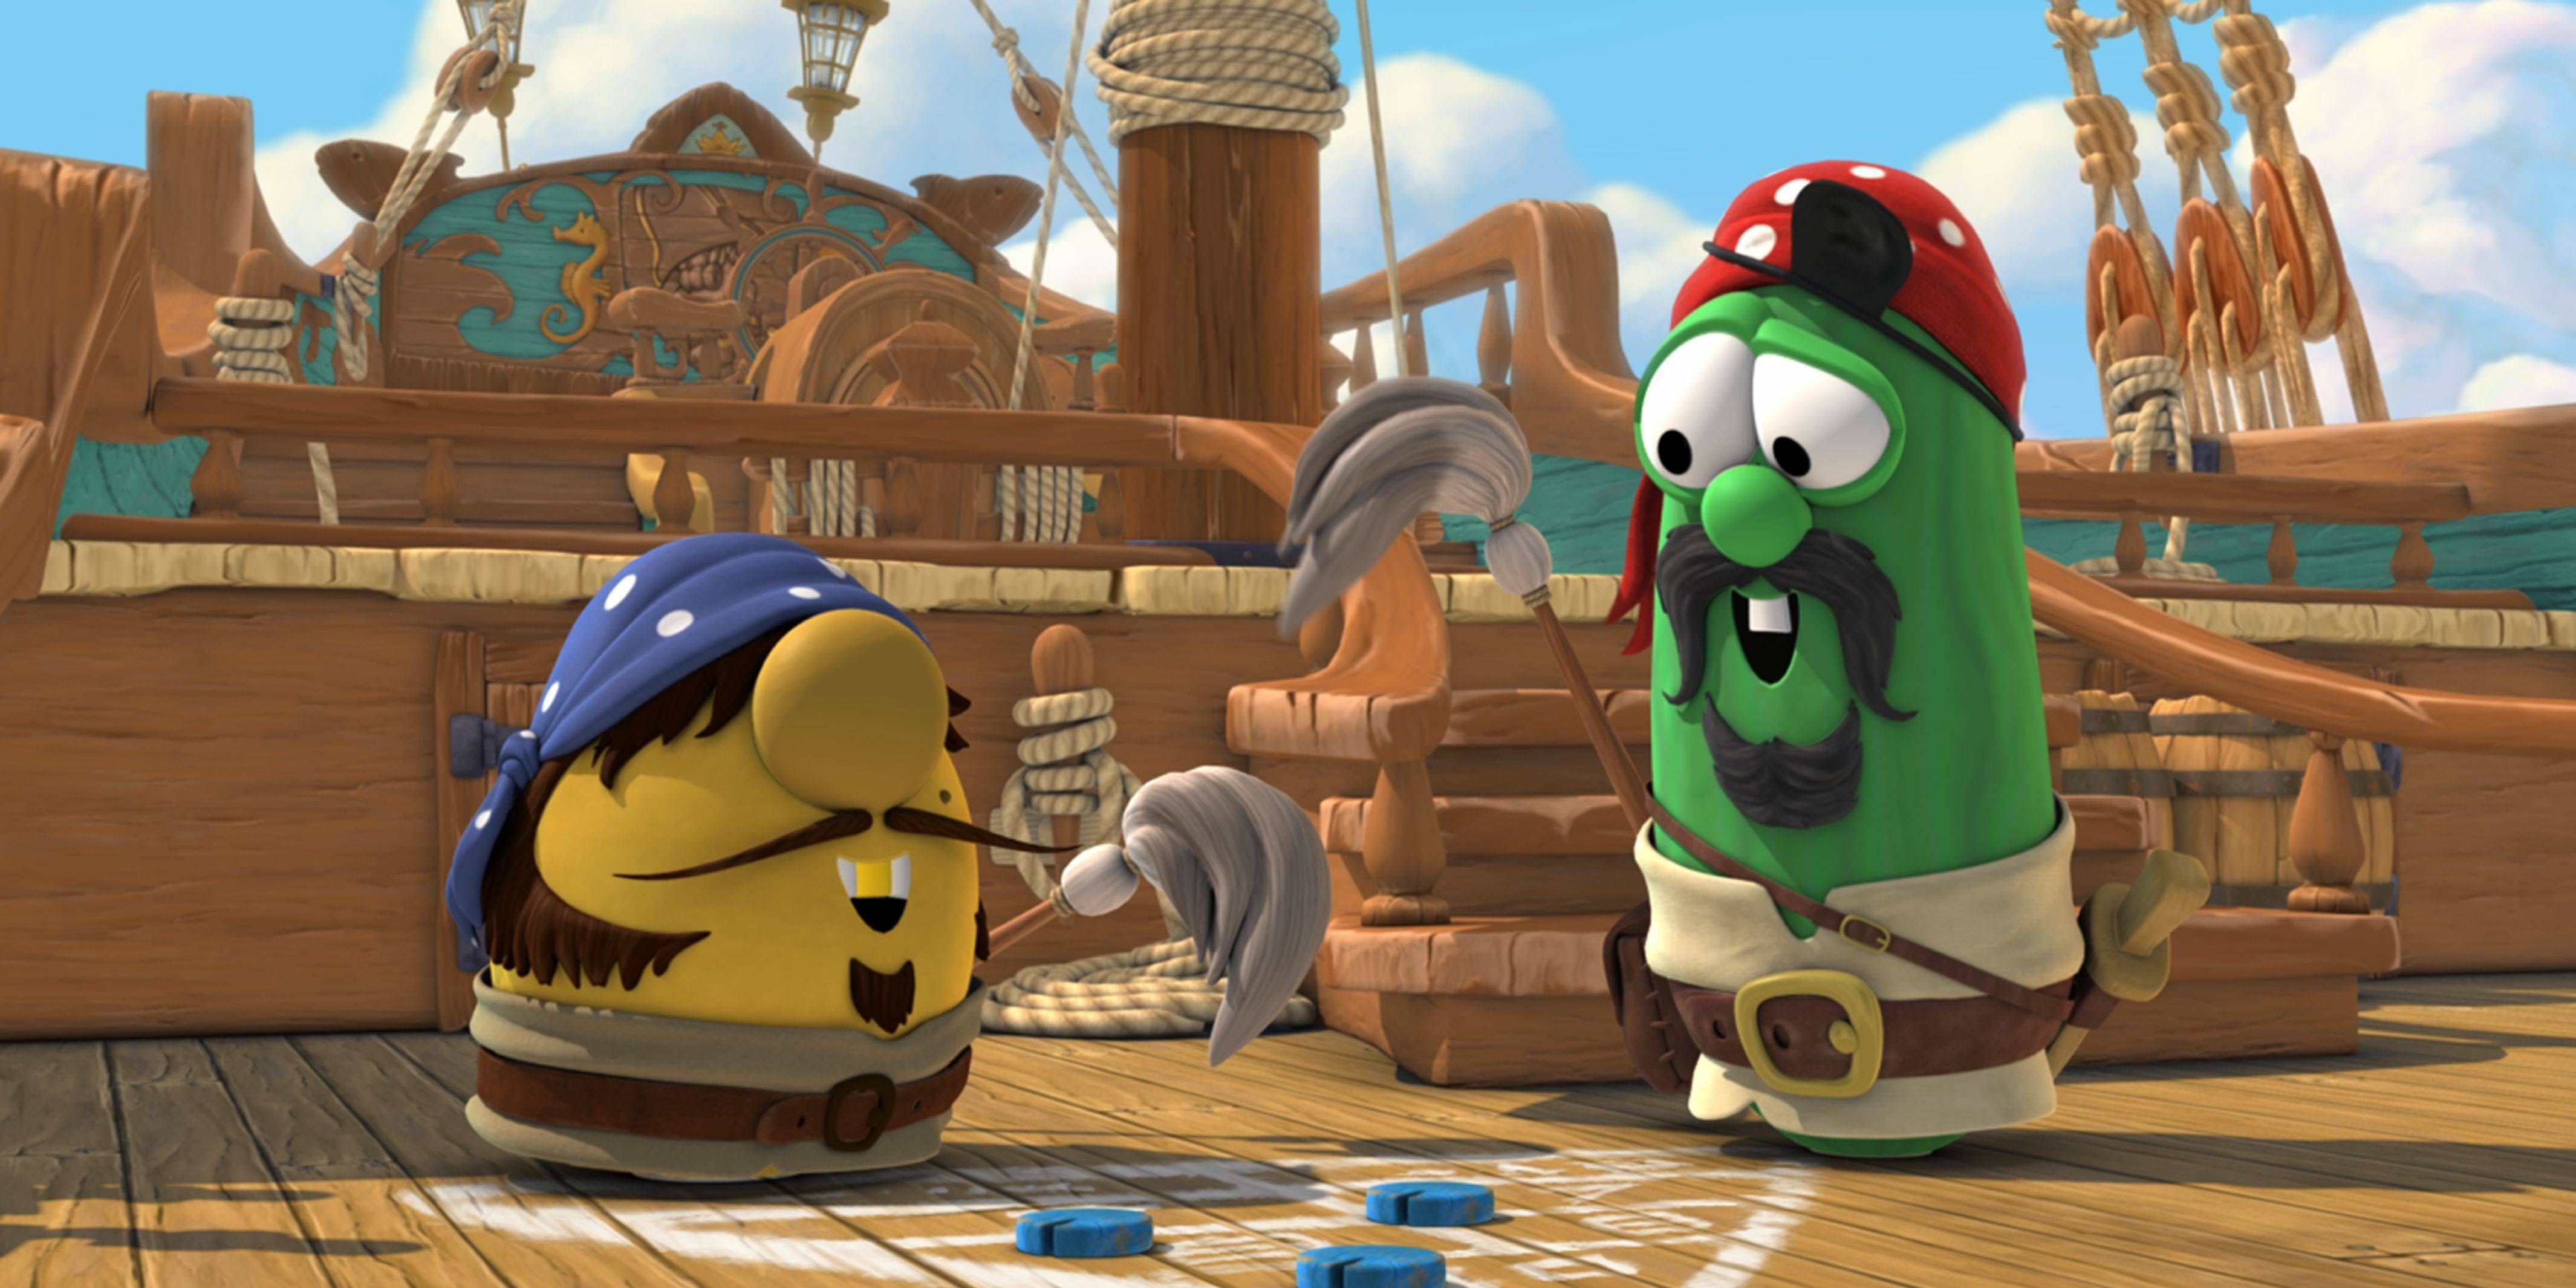 Who dont. Приключения пиратов в стране овощей 2. Приключения пиратов в стране овощей. Приключение пиратов в стране овощей 1.